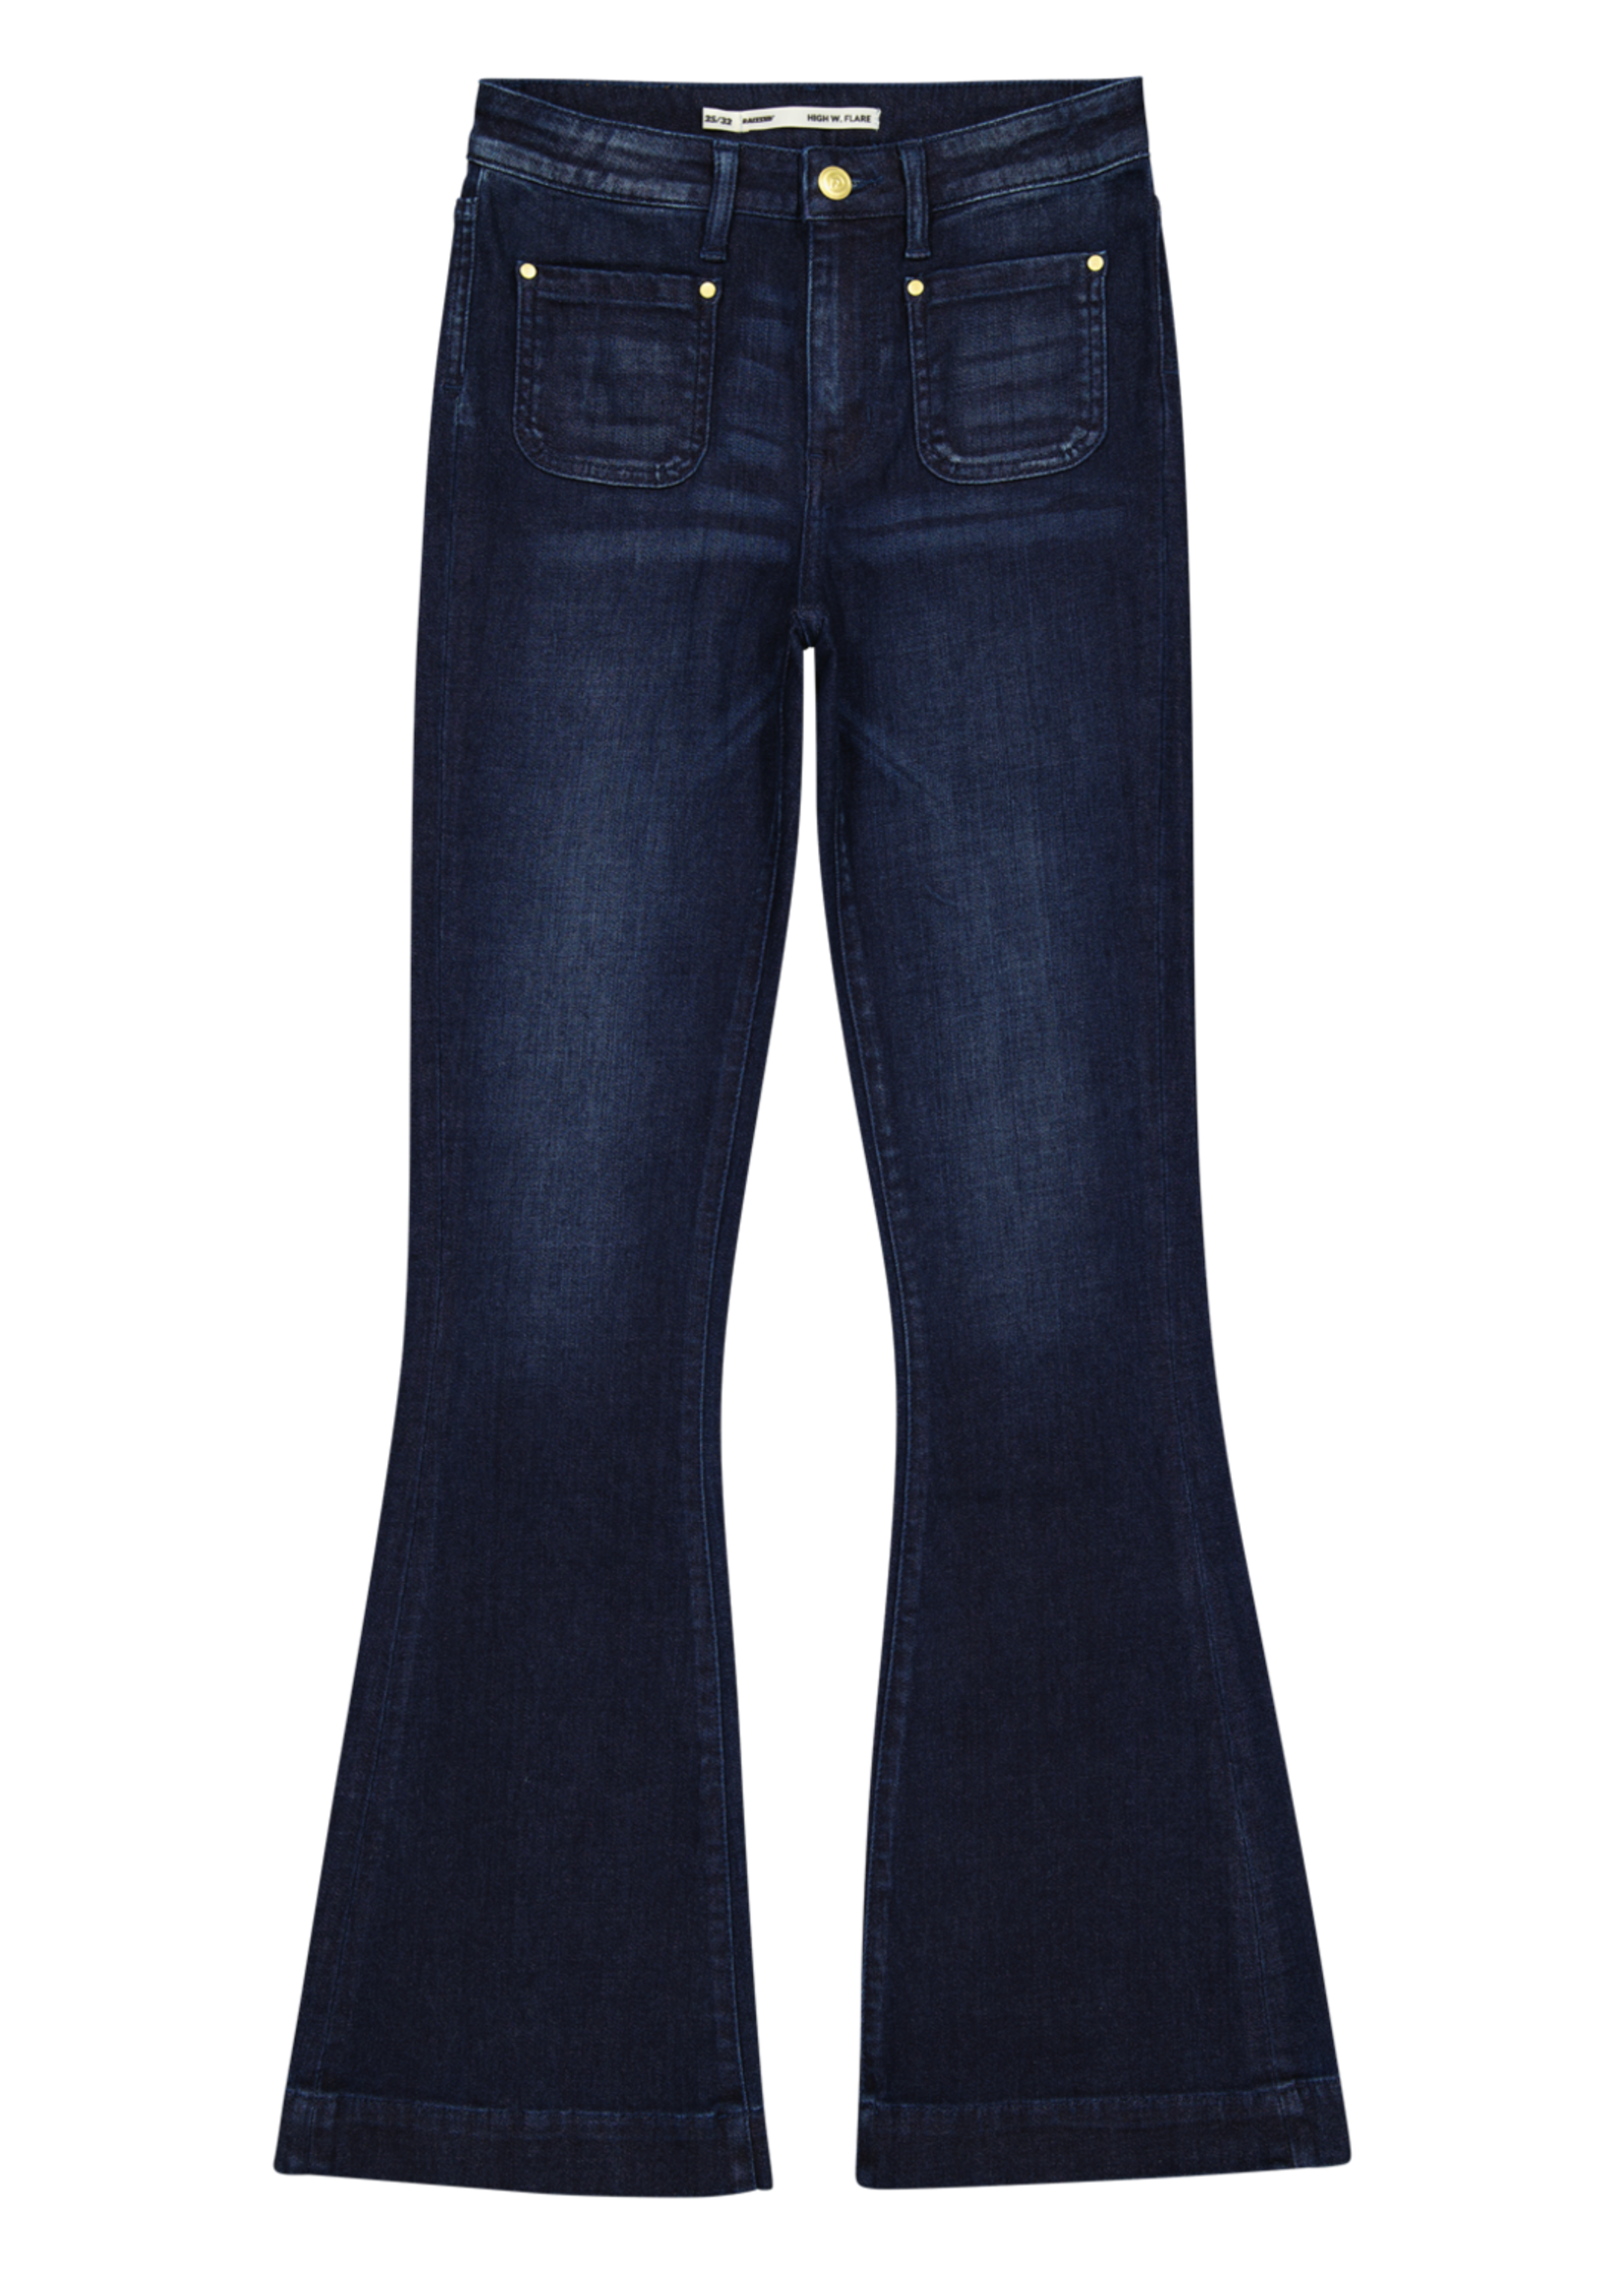 Raizzed Raizzed Patchedon Pockets jeans